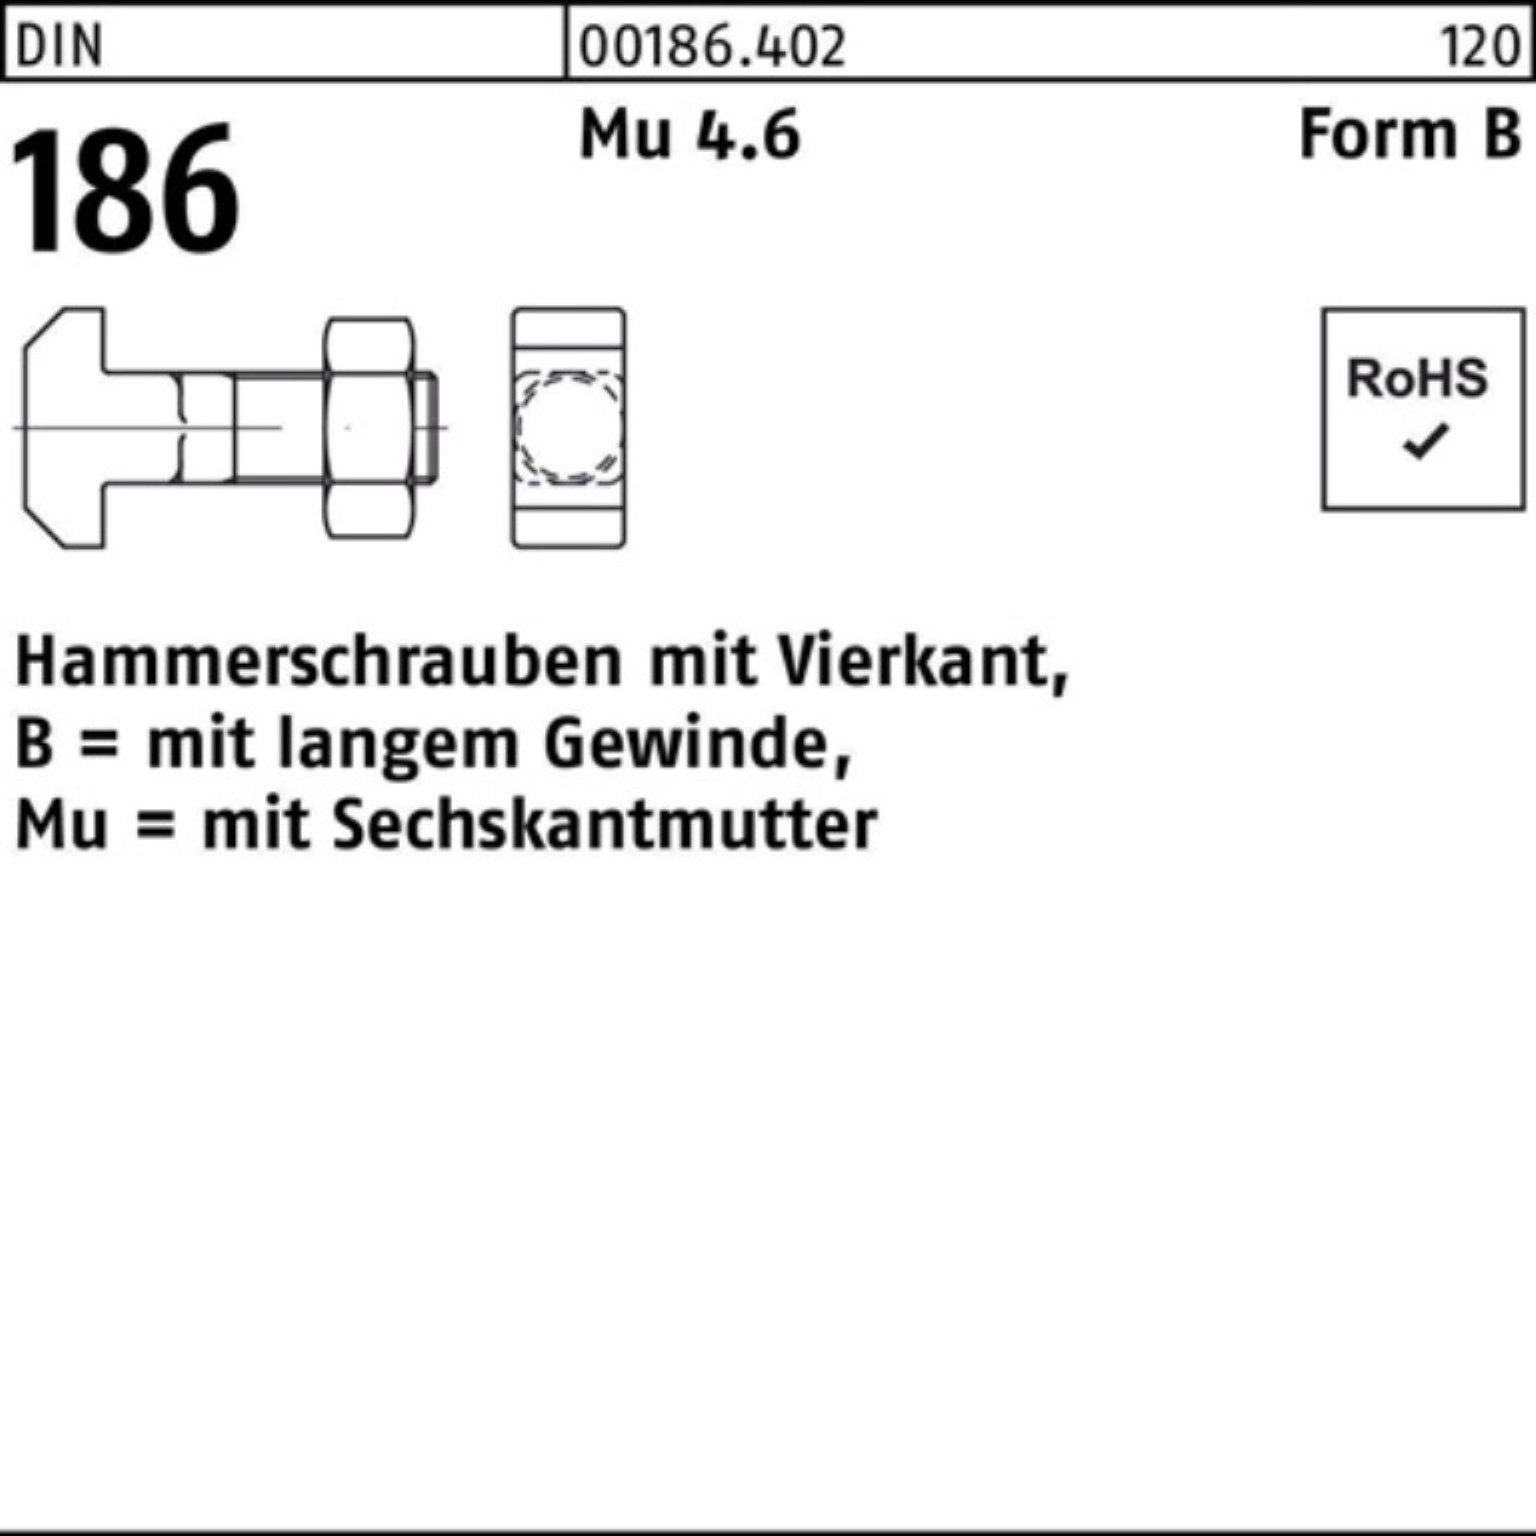 Reyher Schraube 100er Pack Hammerschraube DIN 186 FormB Vierkant 6-ktmutter BM 20x 200